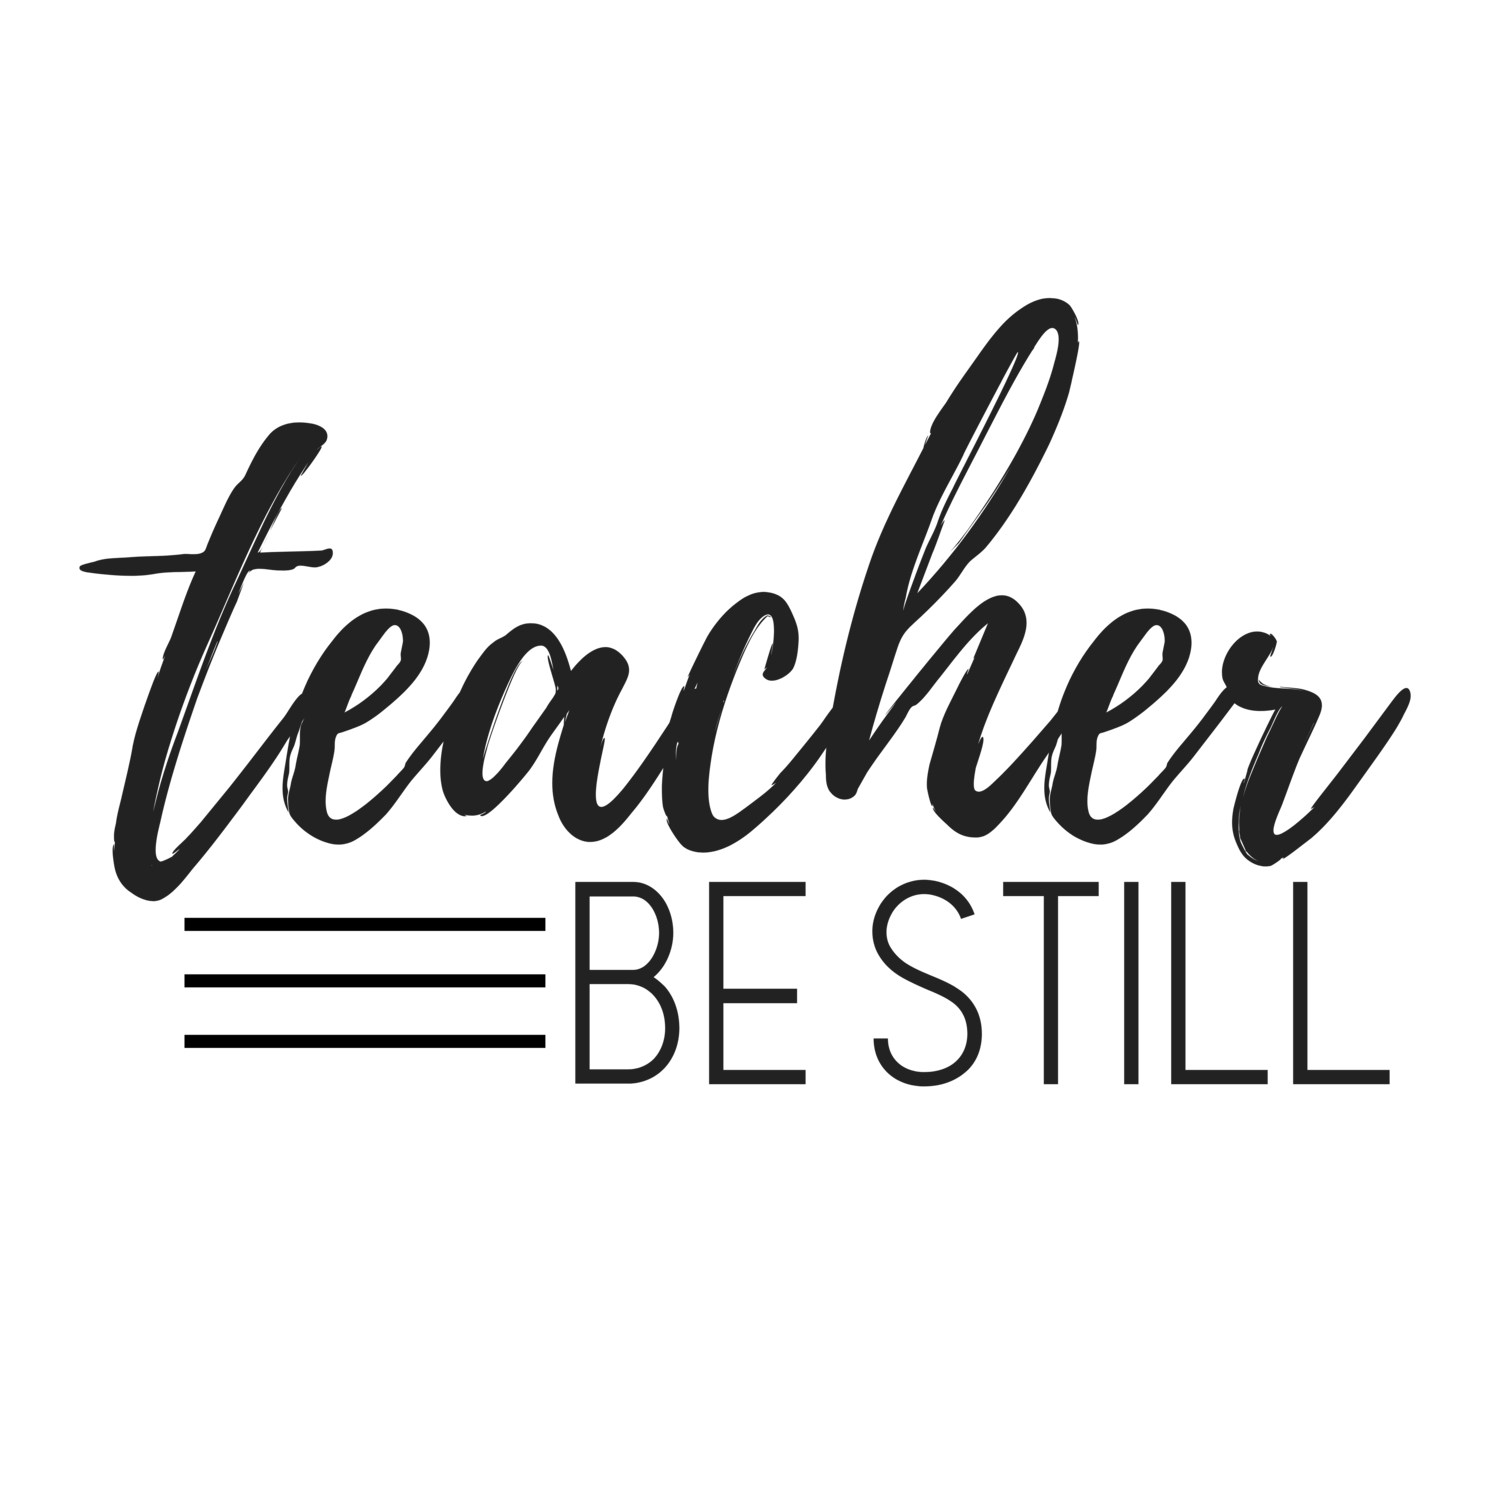 Teacher, Be Still